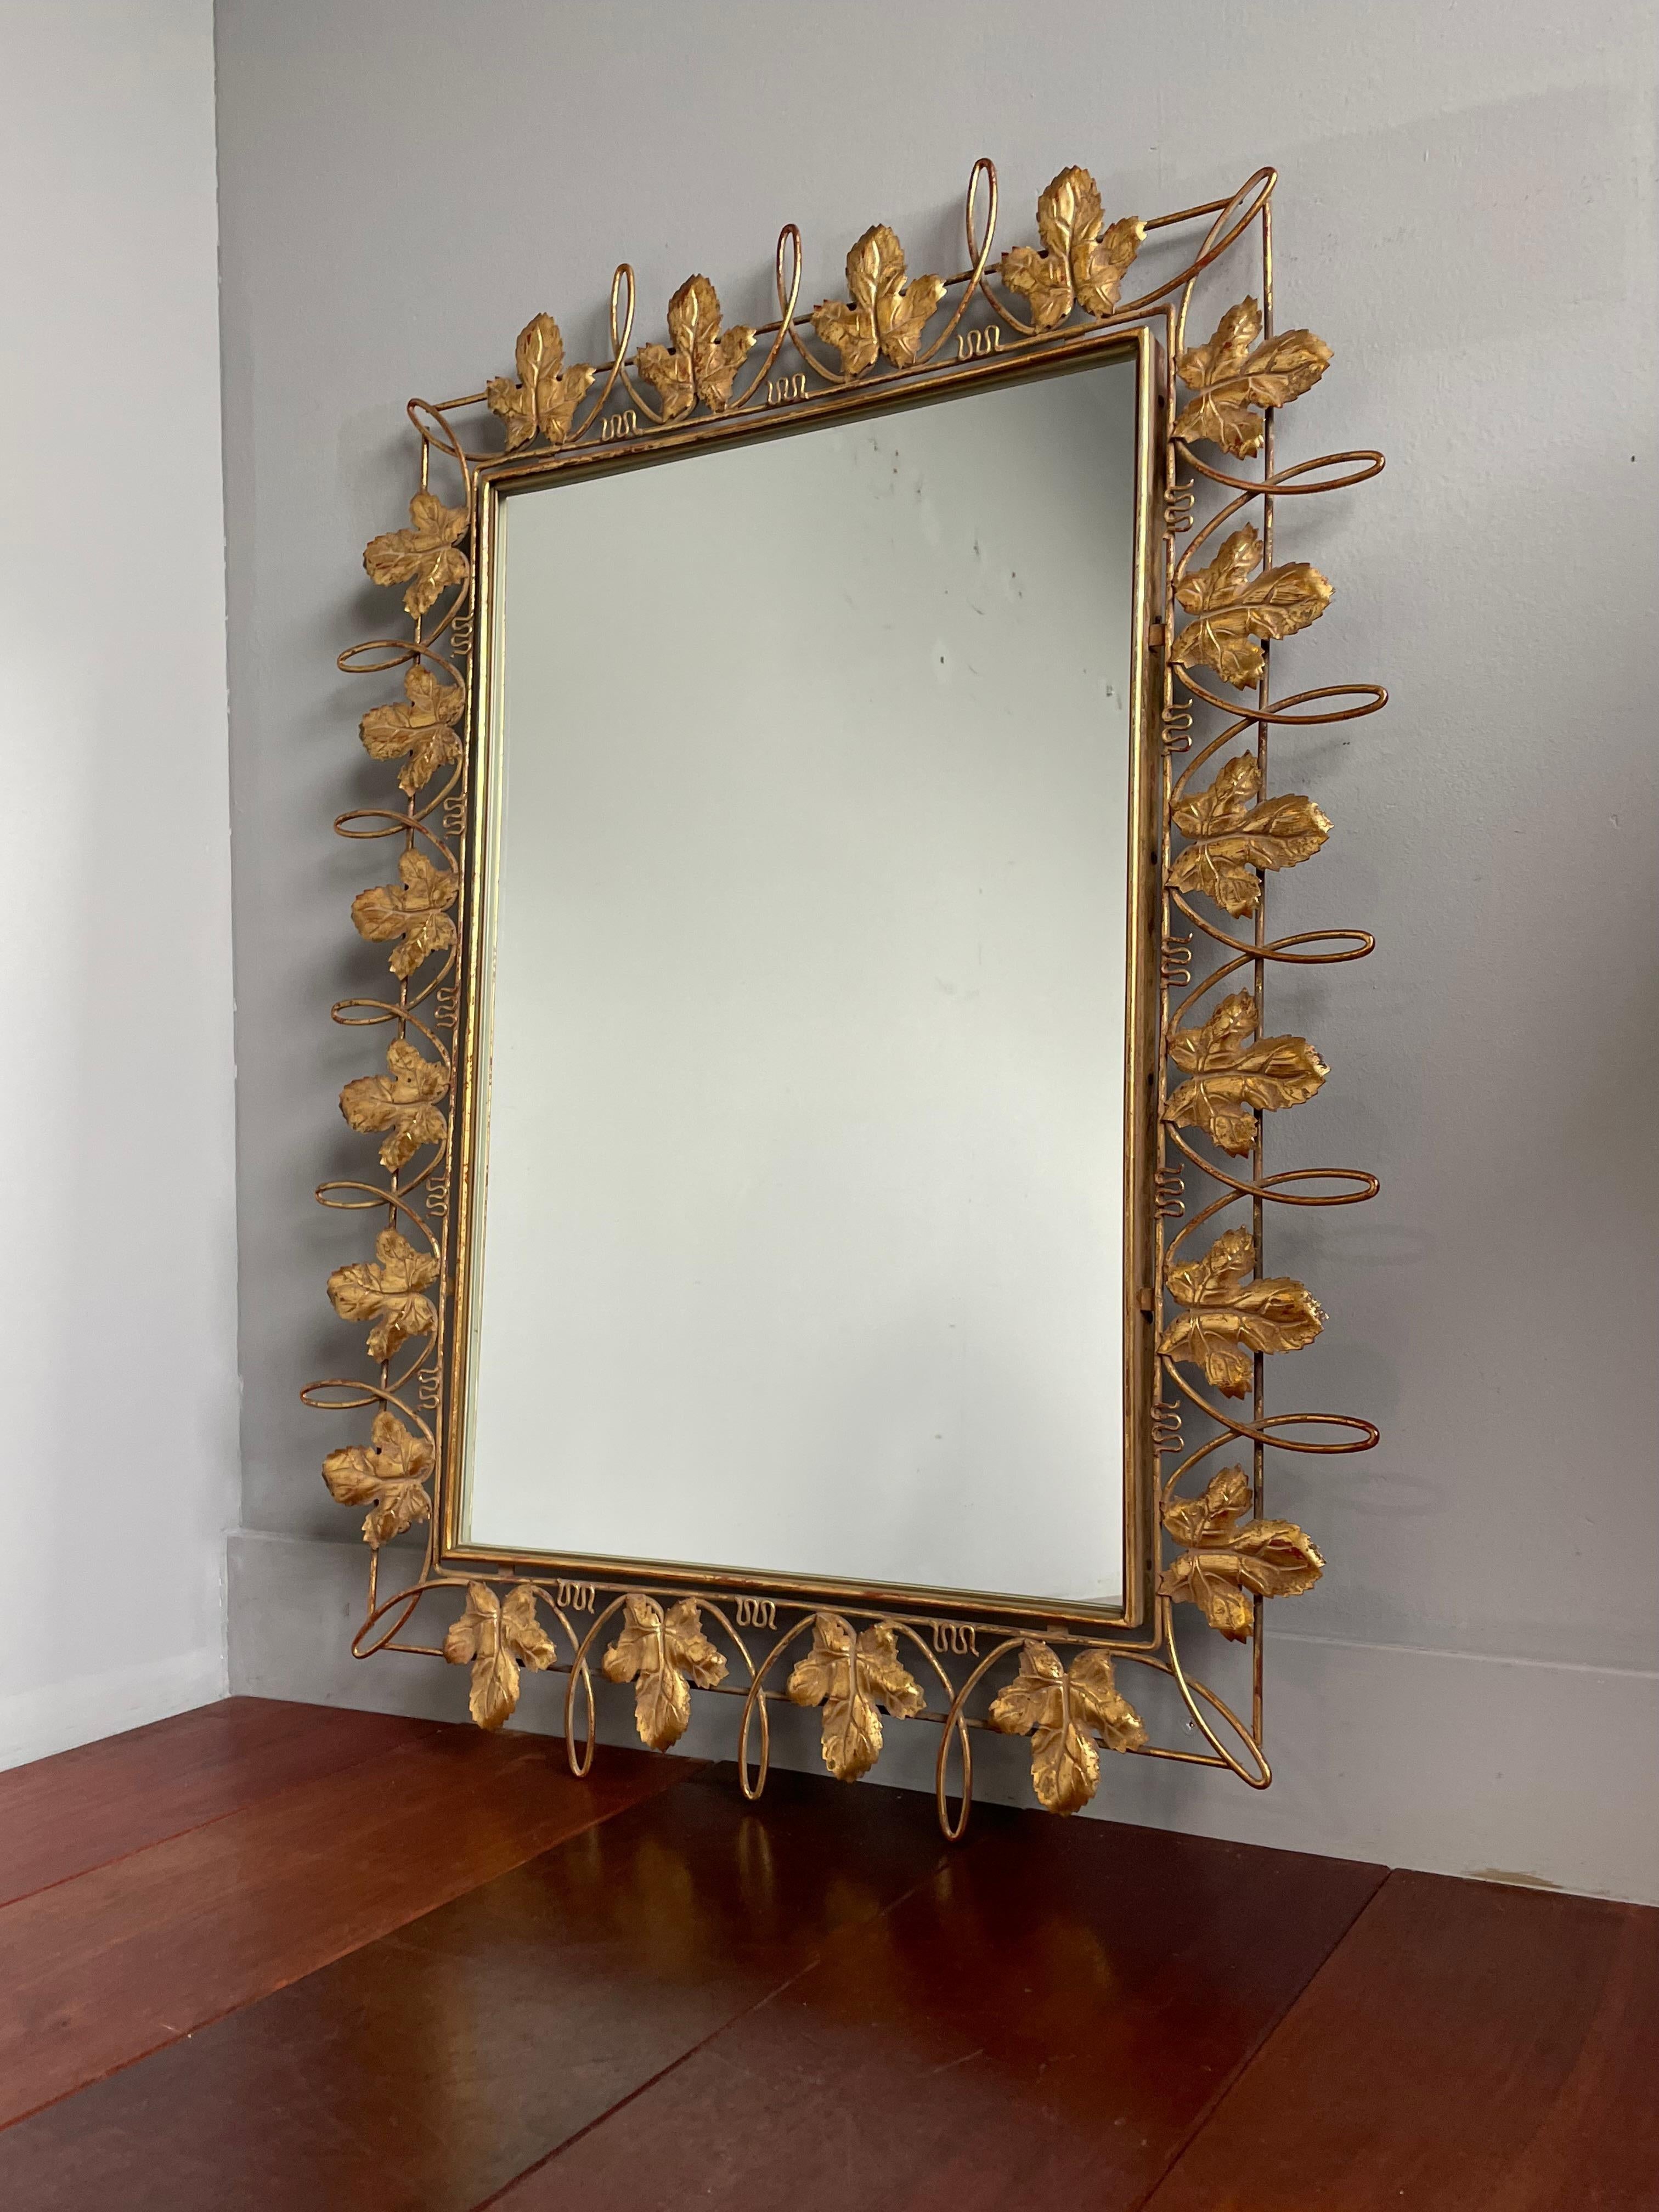 Miroir mural remarquable avec des feuilles de vigne dorées, fabriquées à la main.

Par l'intermédiaire d'un de nos contacts à l'étranger, nous avons récemment acheté ce miroir rare et décoratif avec des 